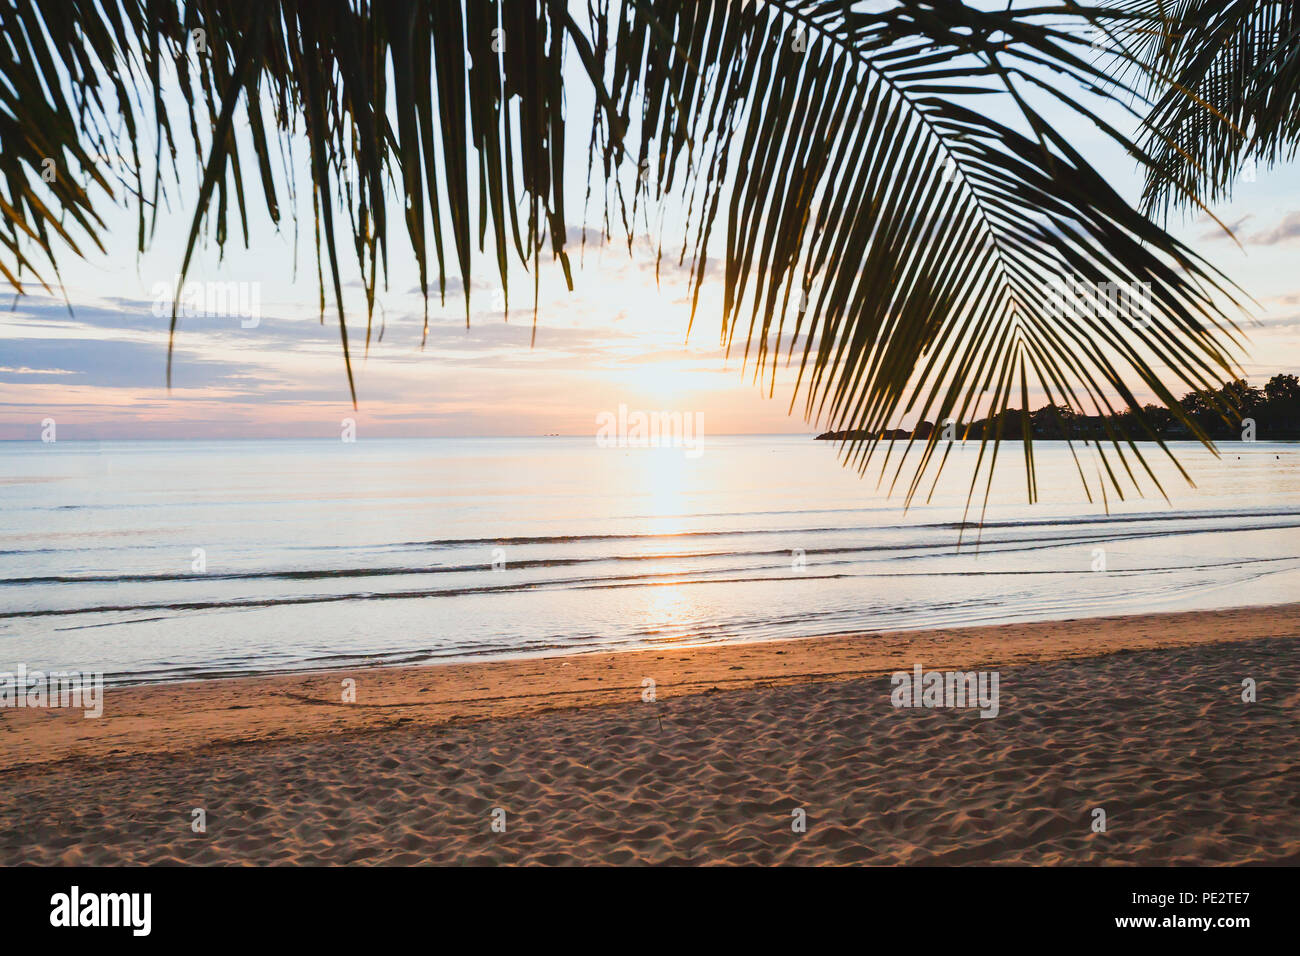 Maison de vacances tropicales plage au coucher du soleil, vacances exotiques vide paysage avec palmiers, la nature calme, le sable et la mer Banque D'Images